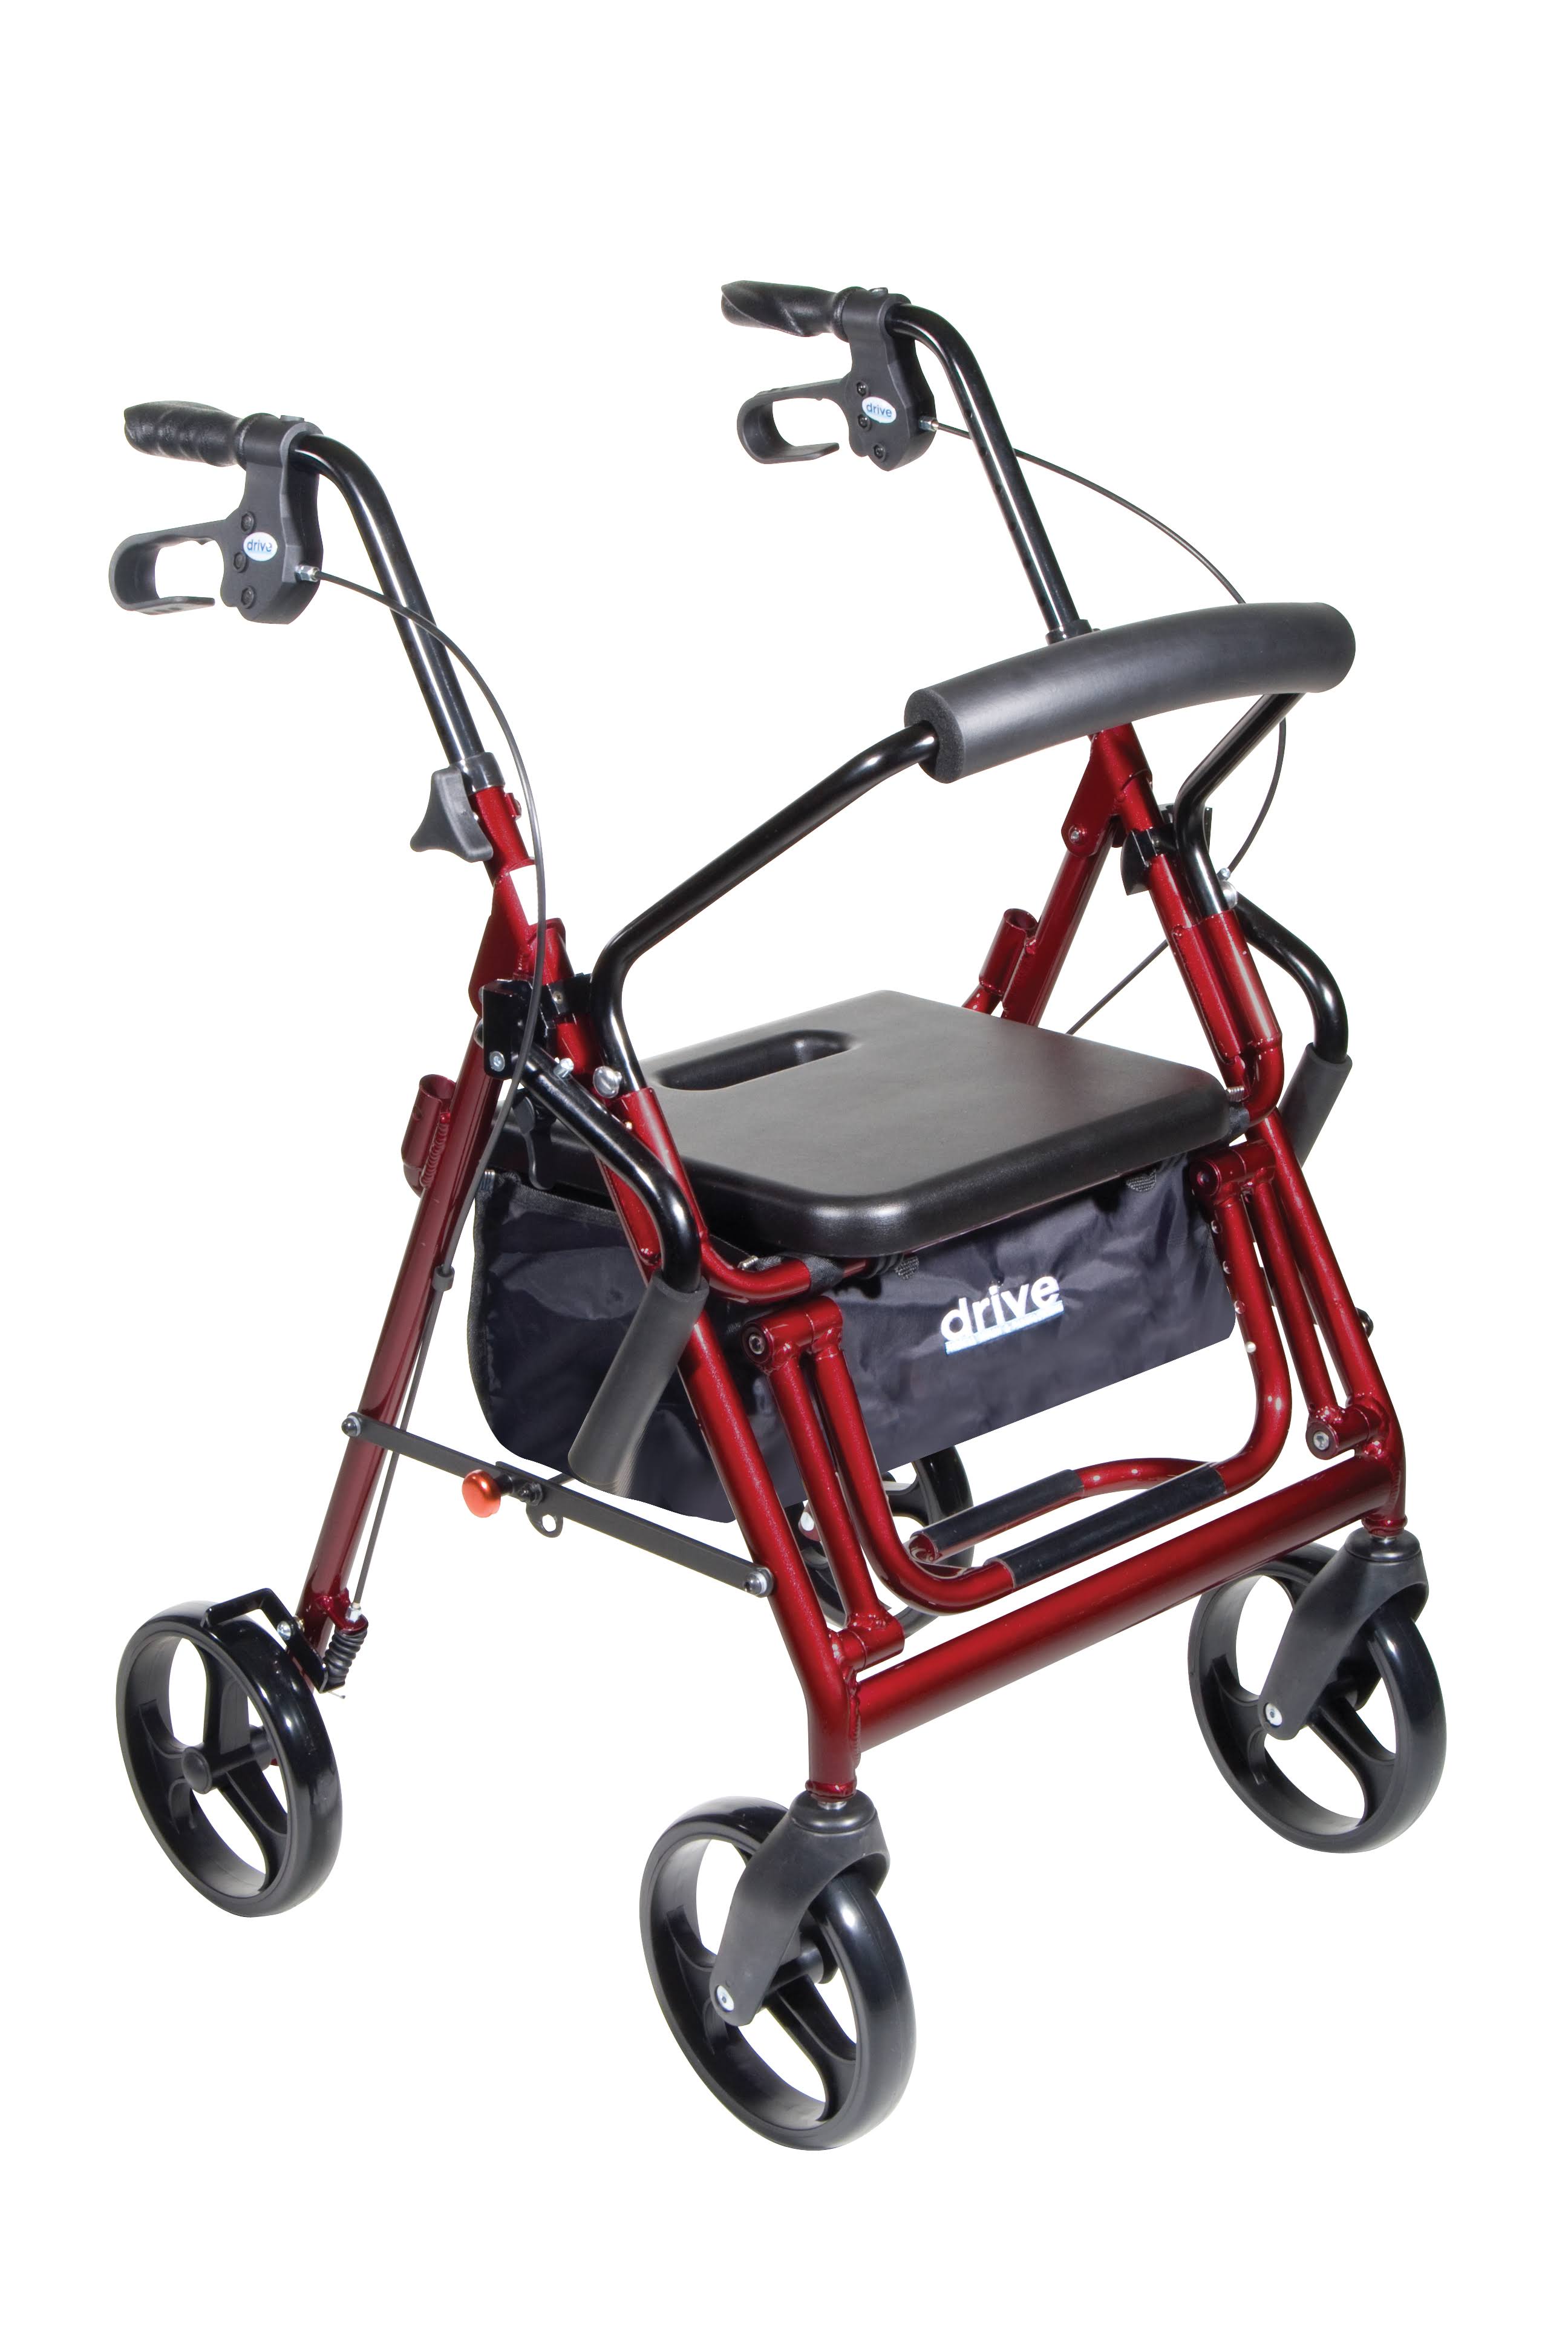 Drive Medical Duet Transport Wheelchair Rollator Walker